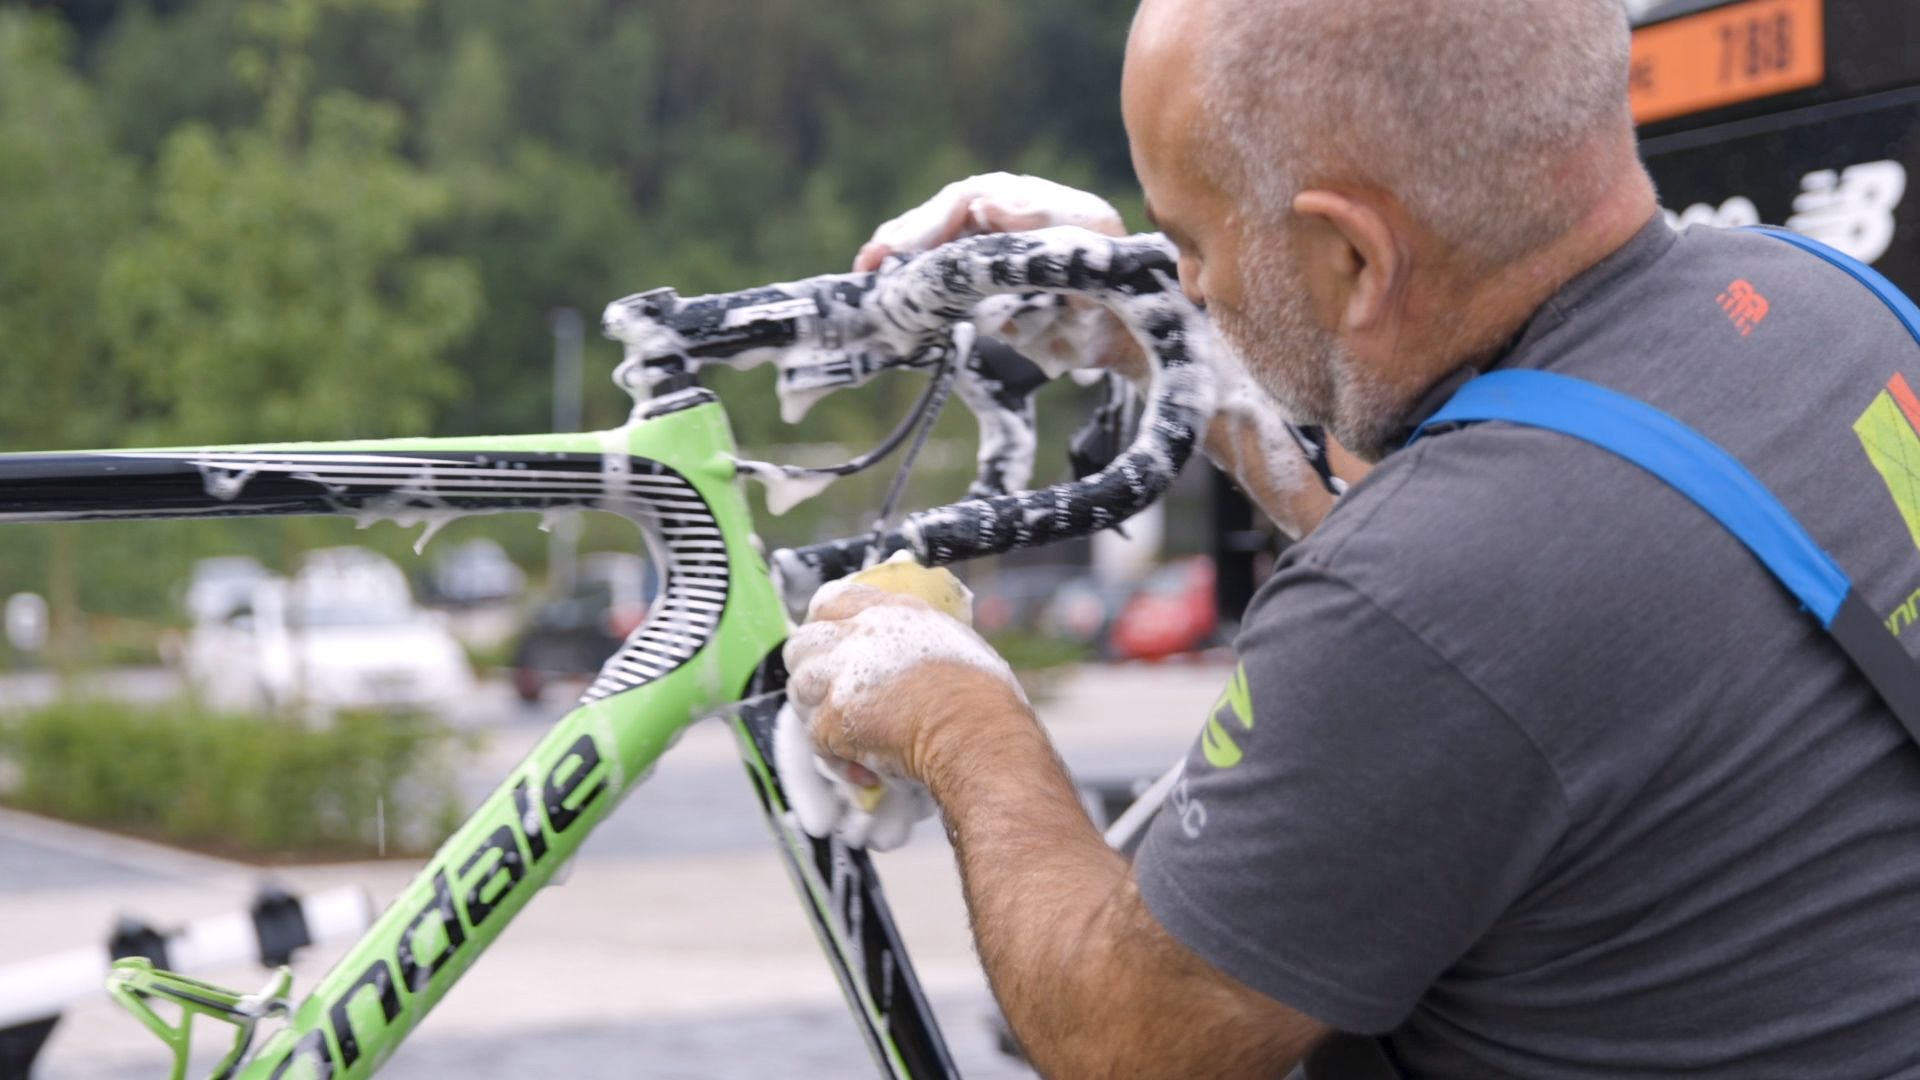 cleaning bike frame